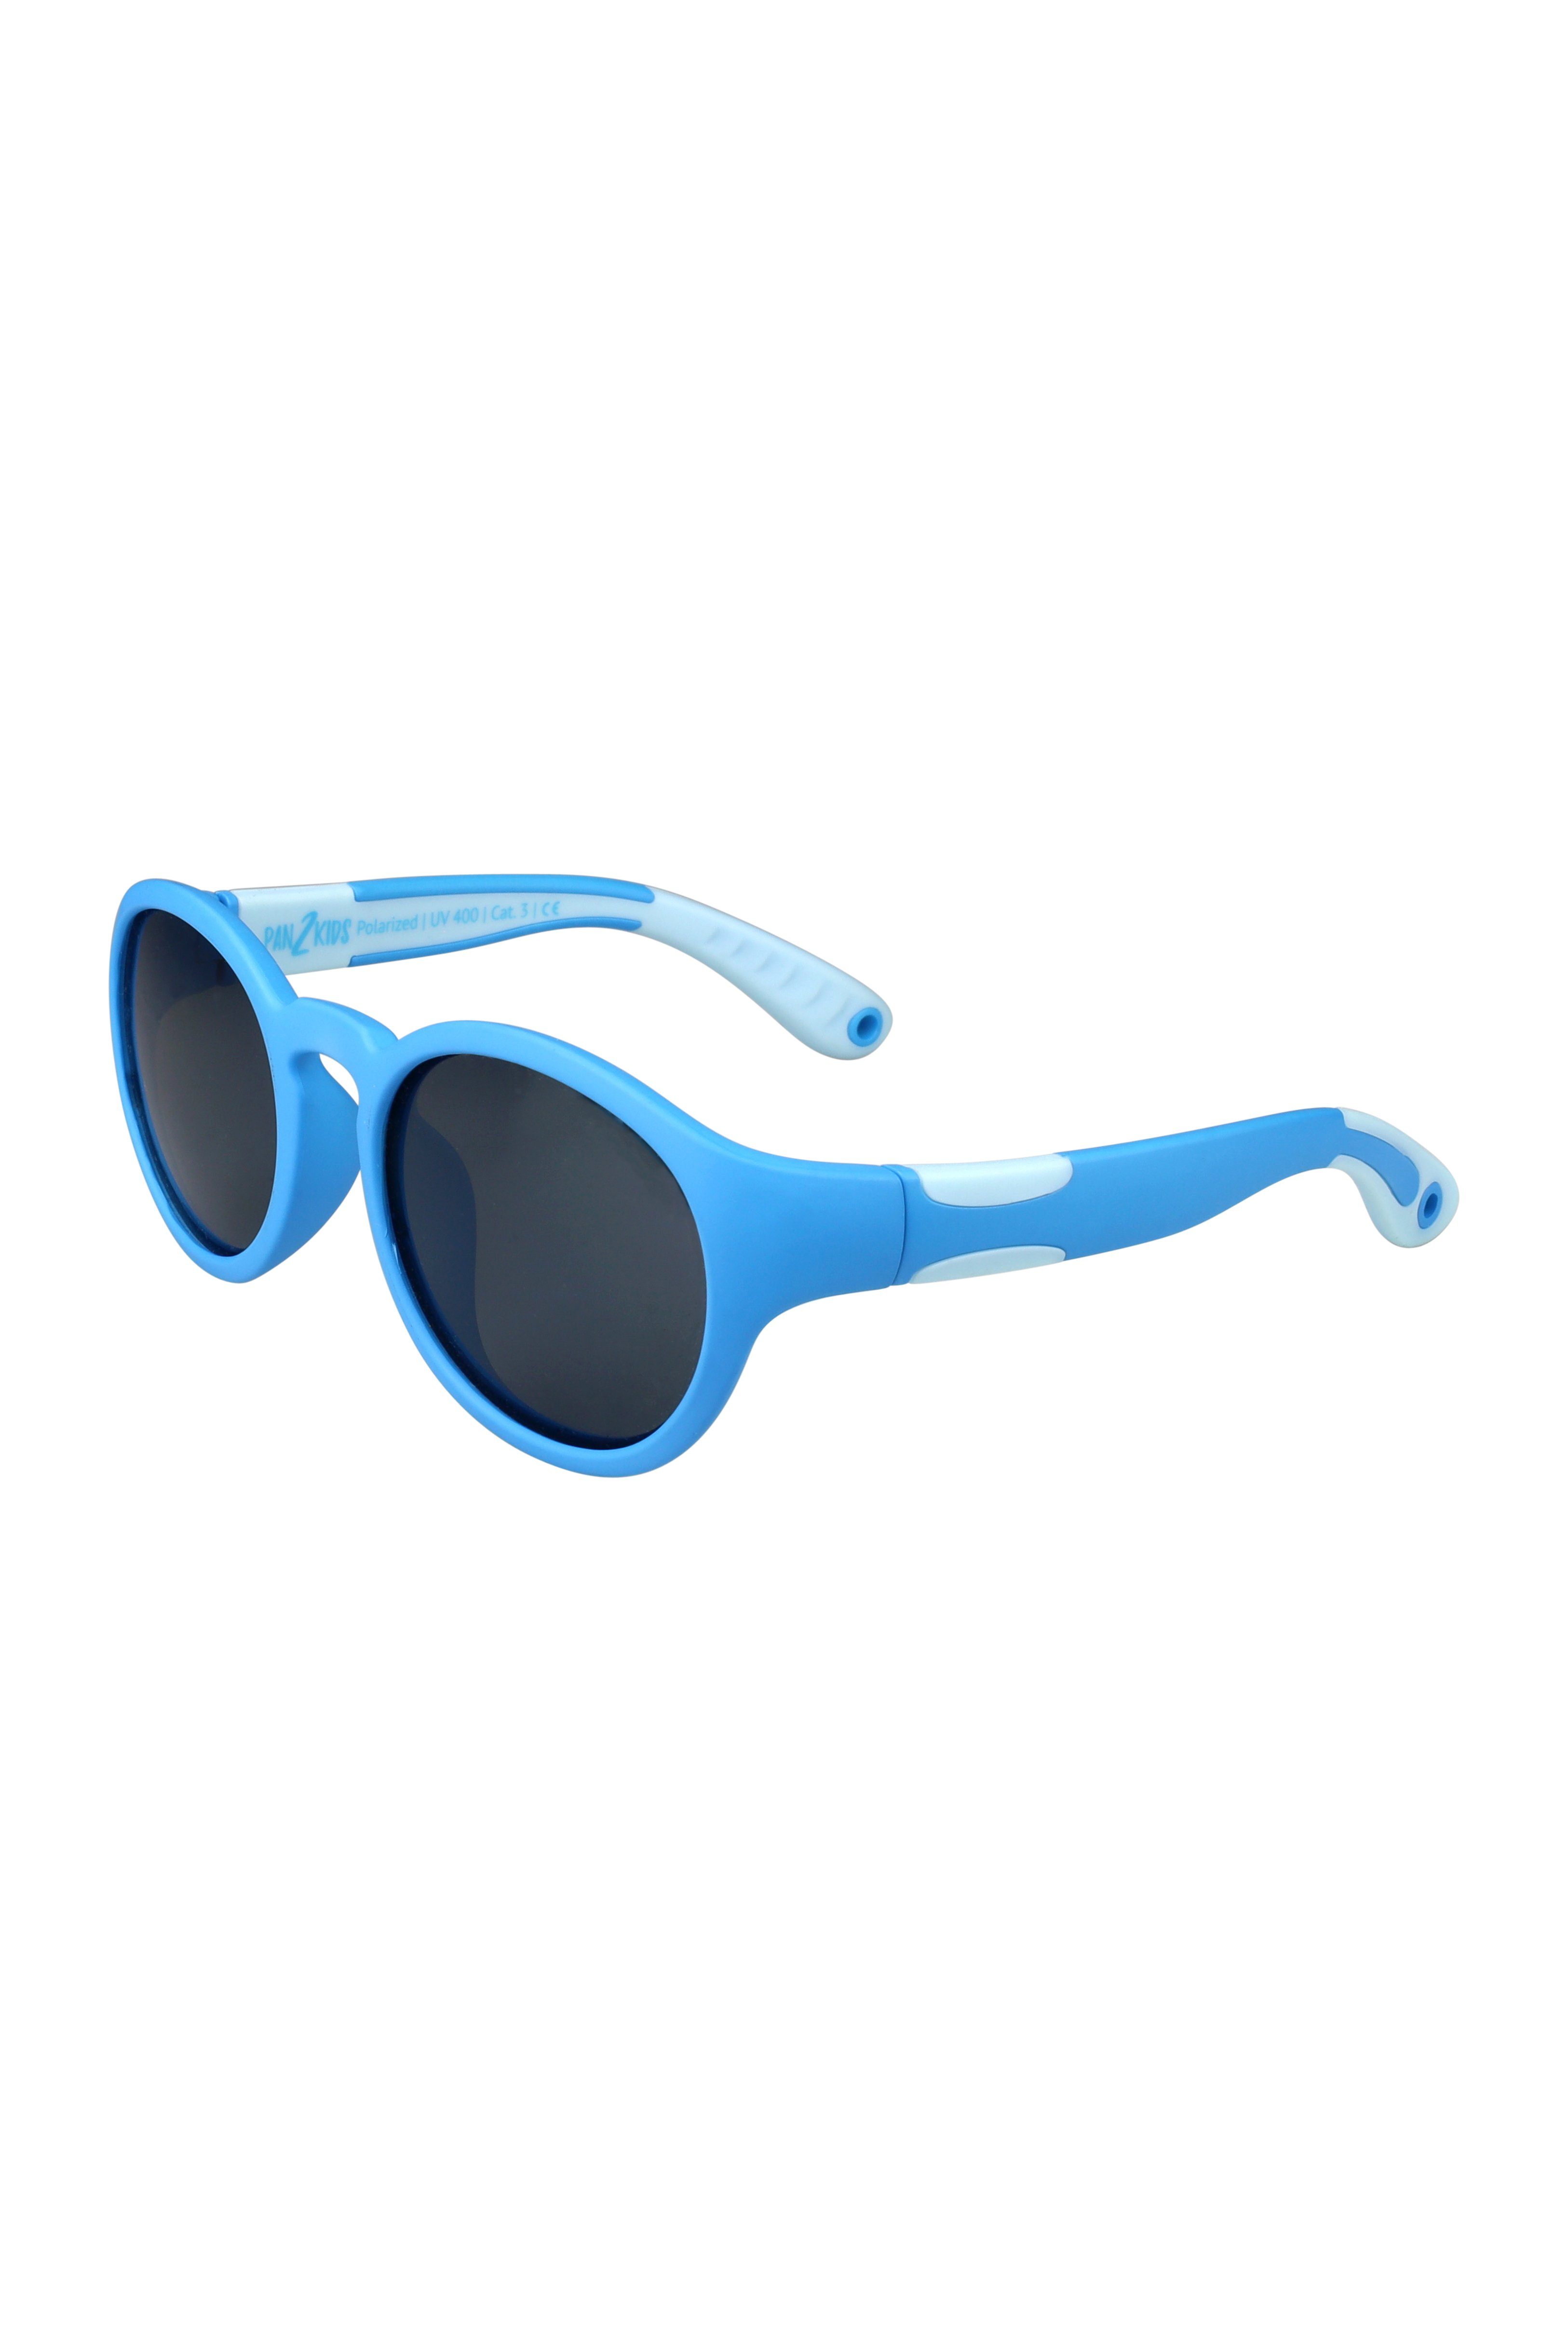 ActiveSol SUNGLASSES Sonnenbrille für Kinder - Pan2Kids, Panto Design, 2 – 5 Jahre, polarisiert Tranquil Blue